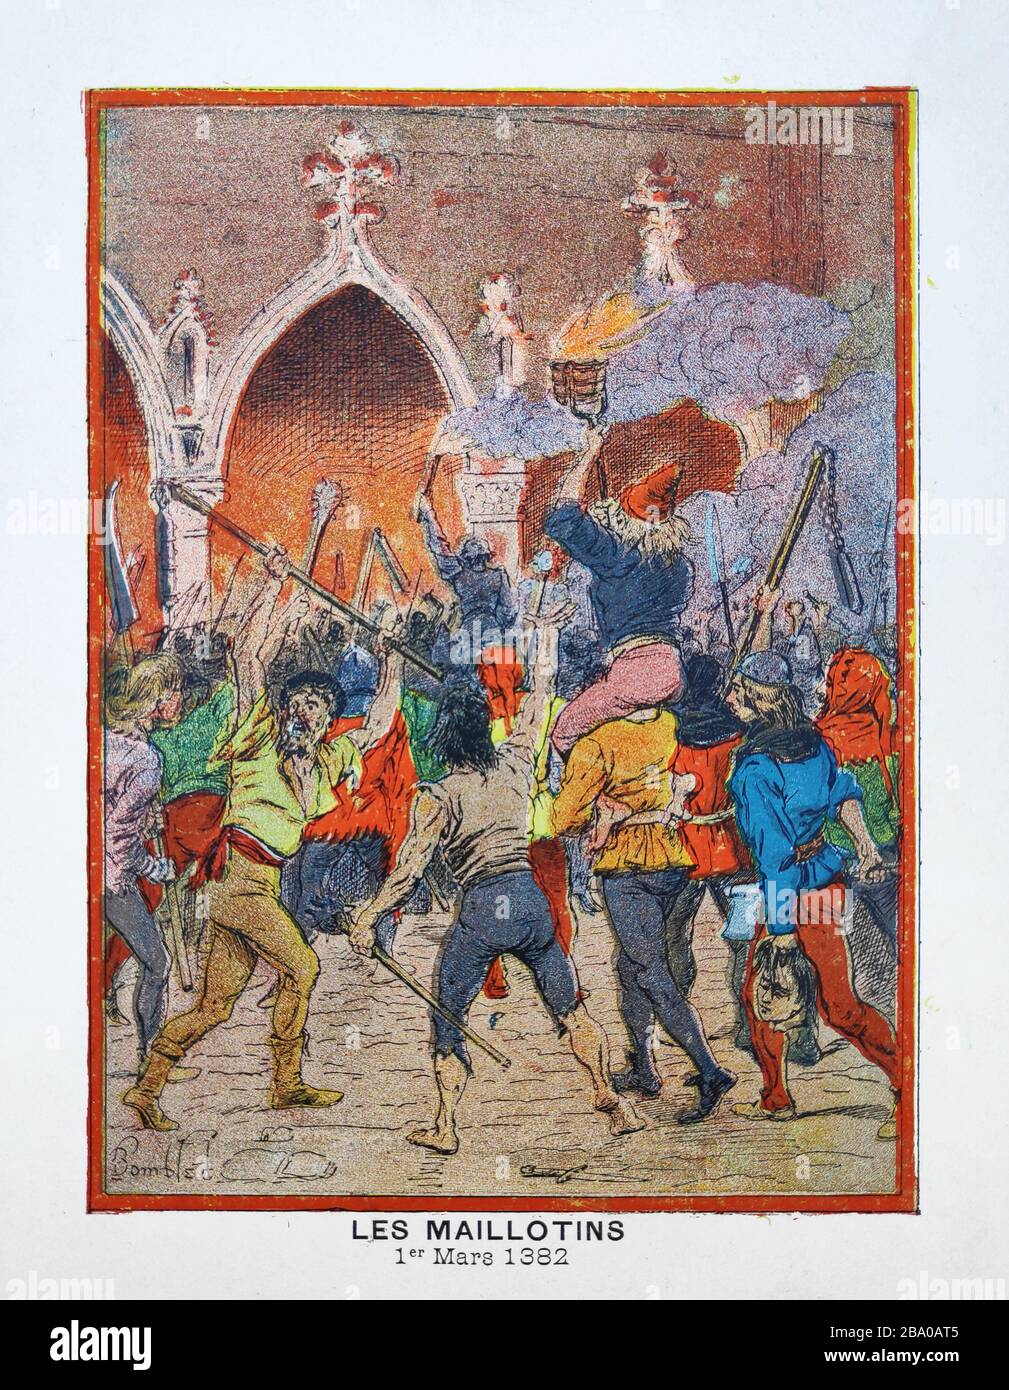 Antigua ilustración de 'Louis Bombled' sobre la revuelta de los Maillotins impresos a finales del siglo 19. Foto de stock